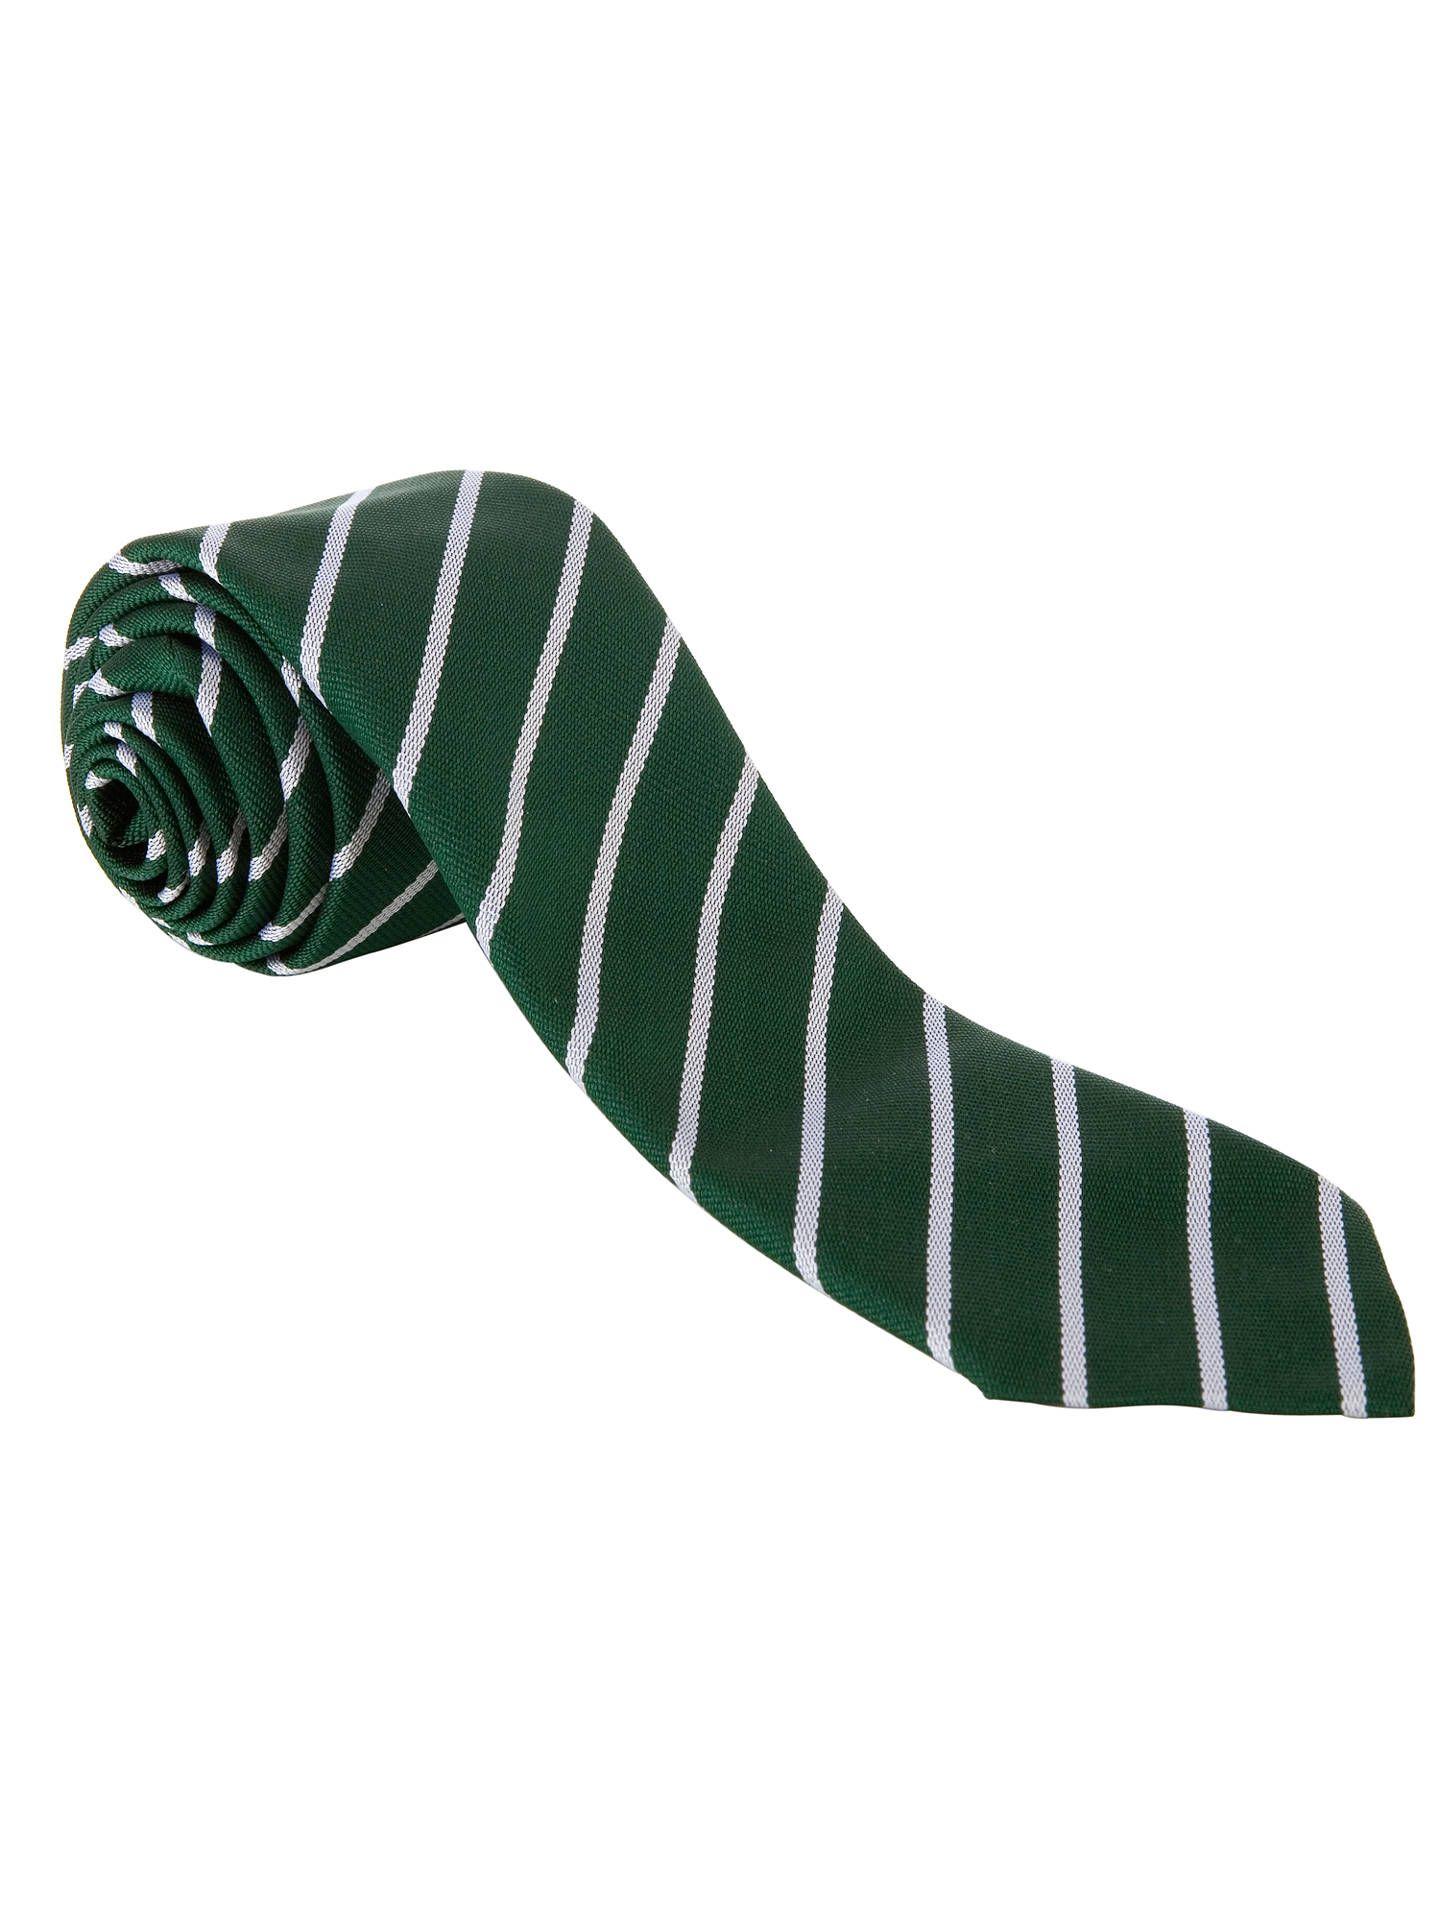 Green White Stripe with Logo - John Lewis & Partners Unisex Stripe Tie, Green/White at John Lewis ...